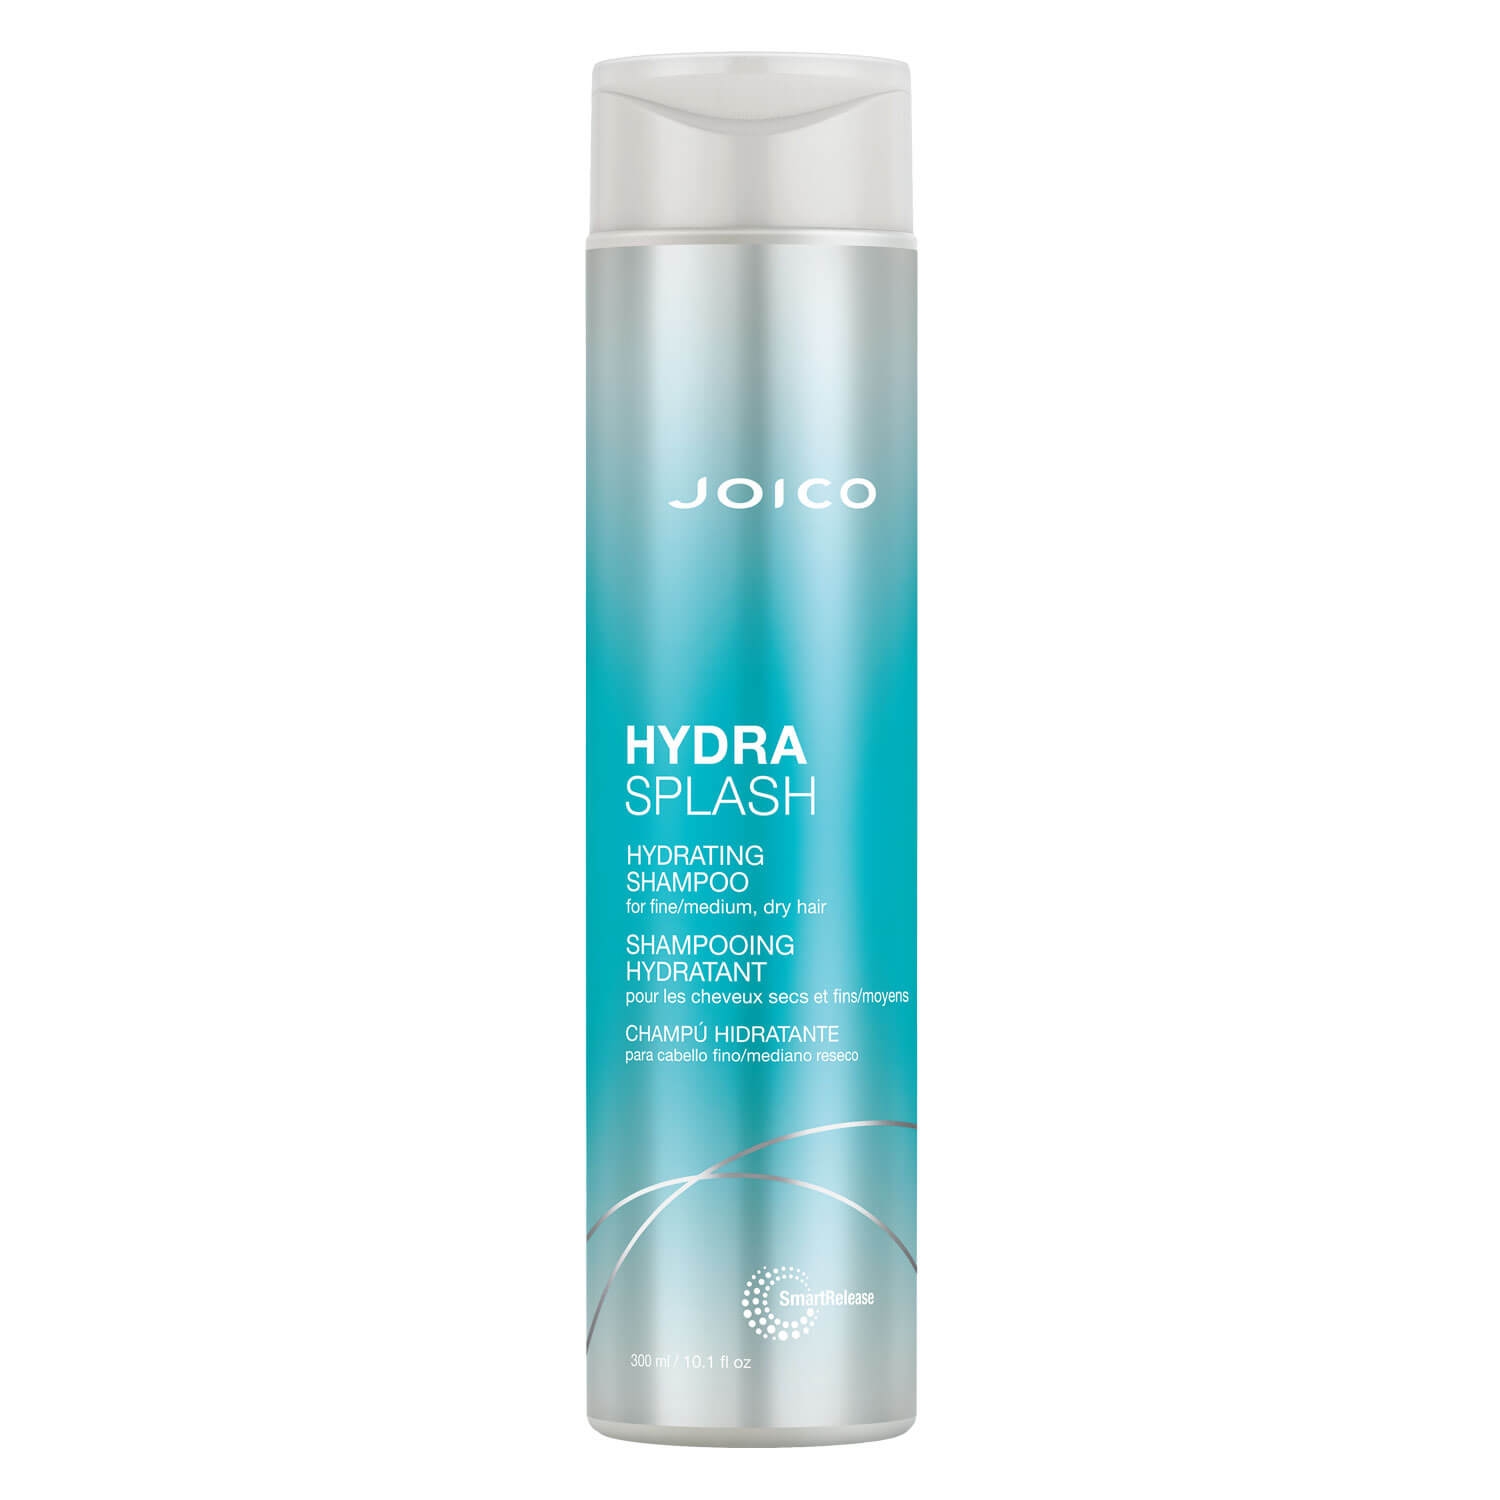 Produktbild von Hydra Splash - Hydrating Shampoo